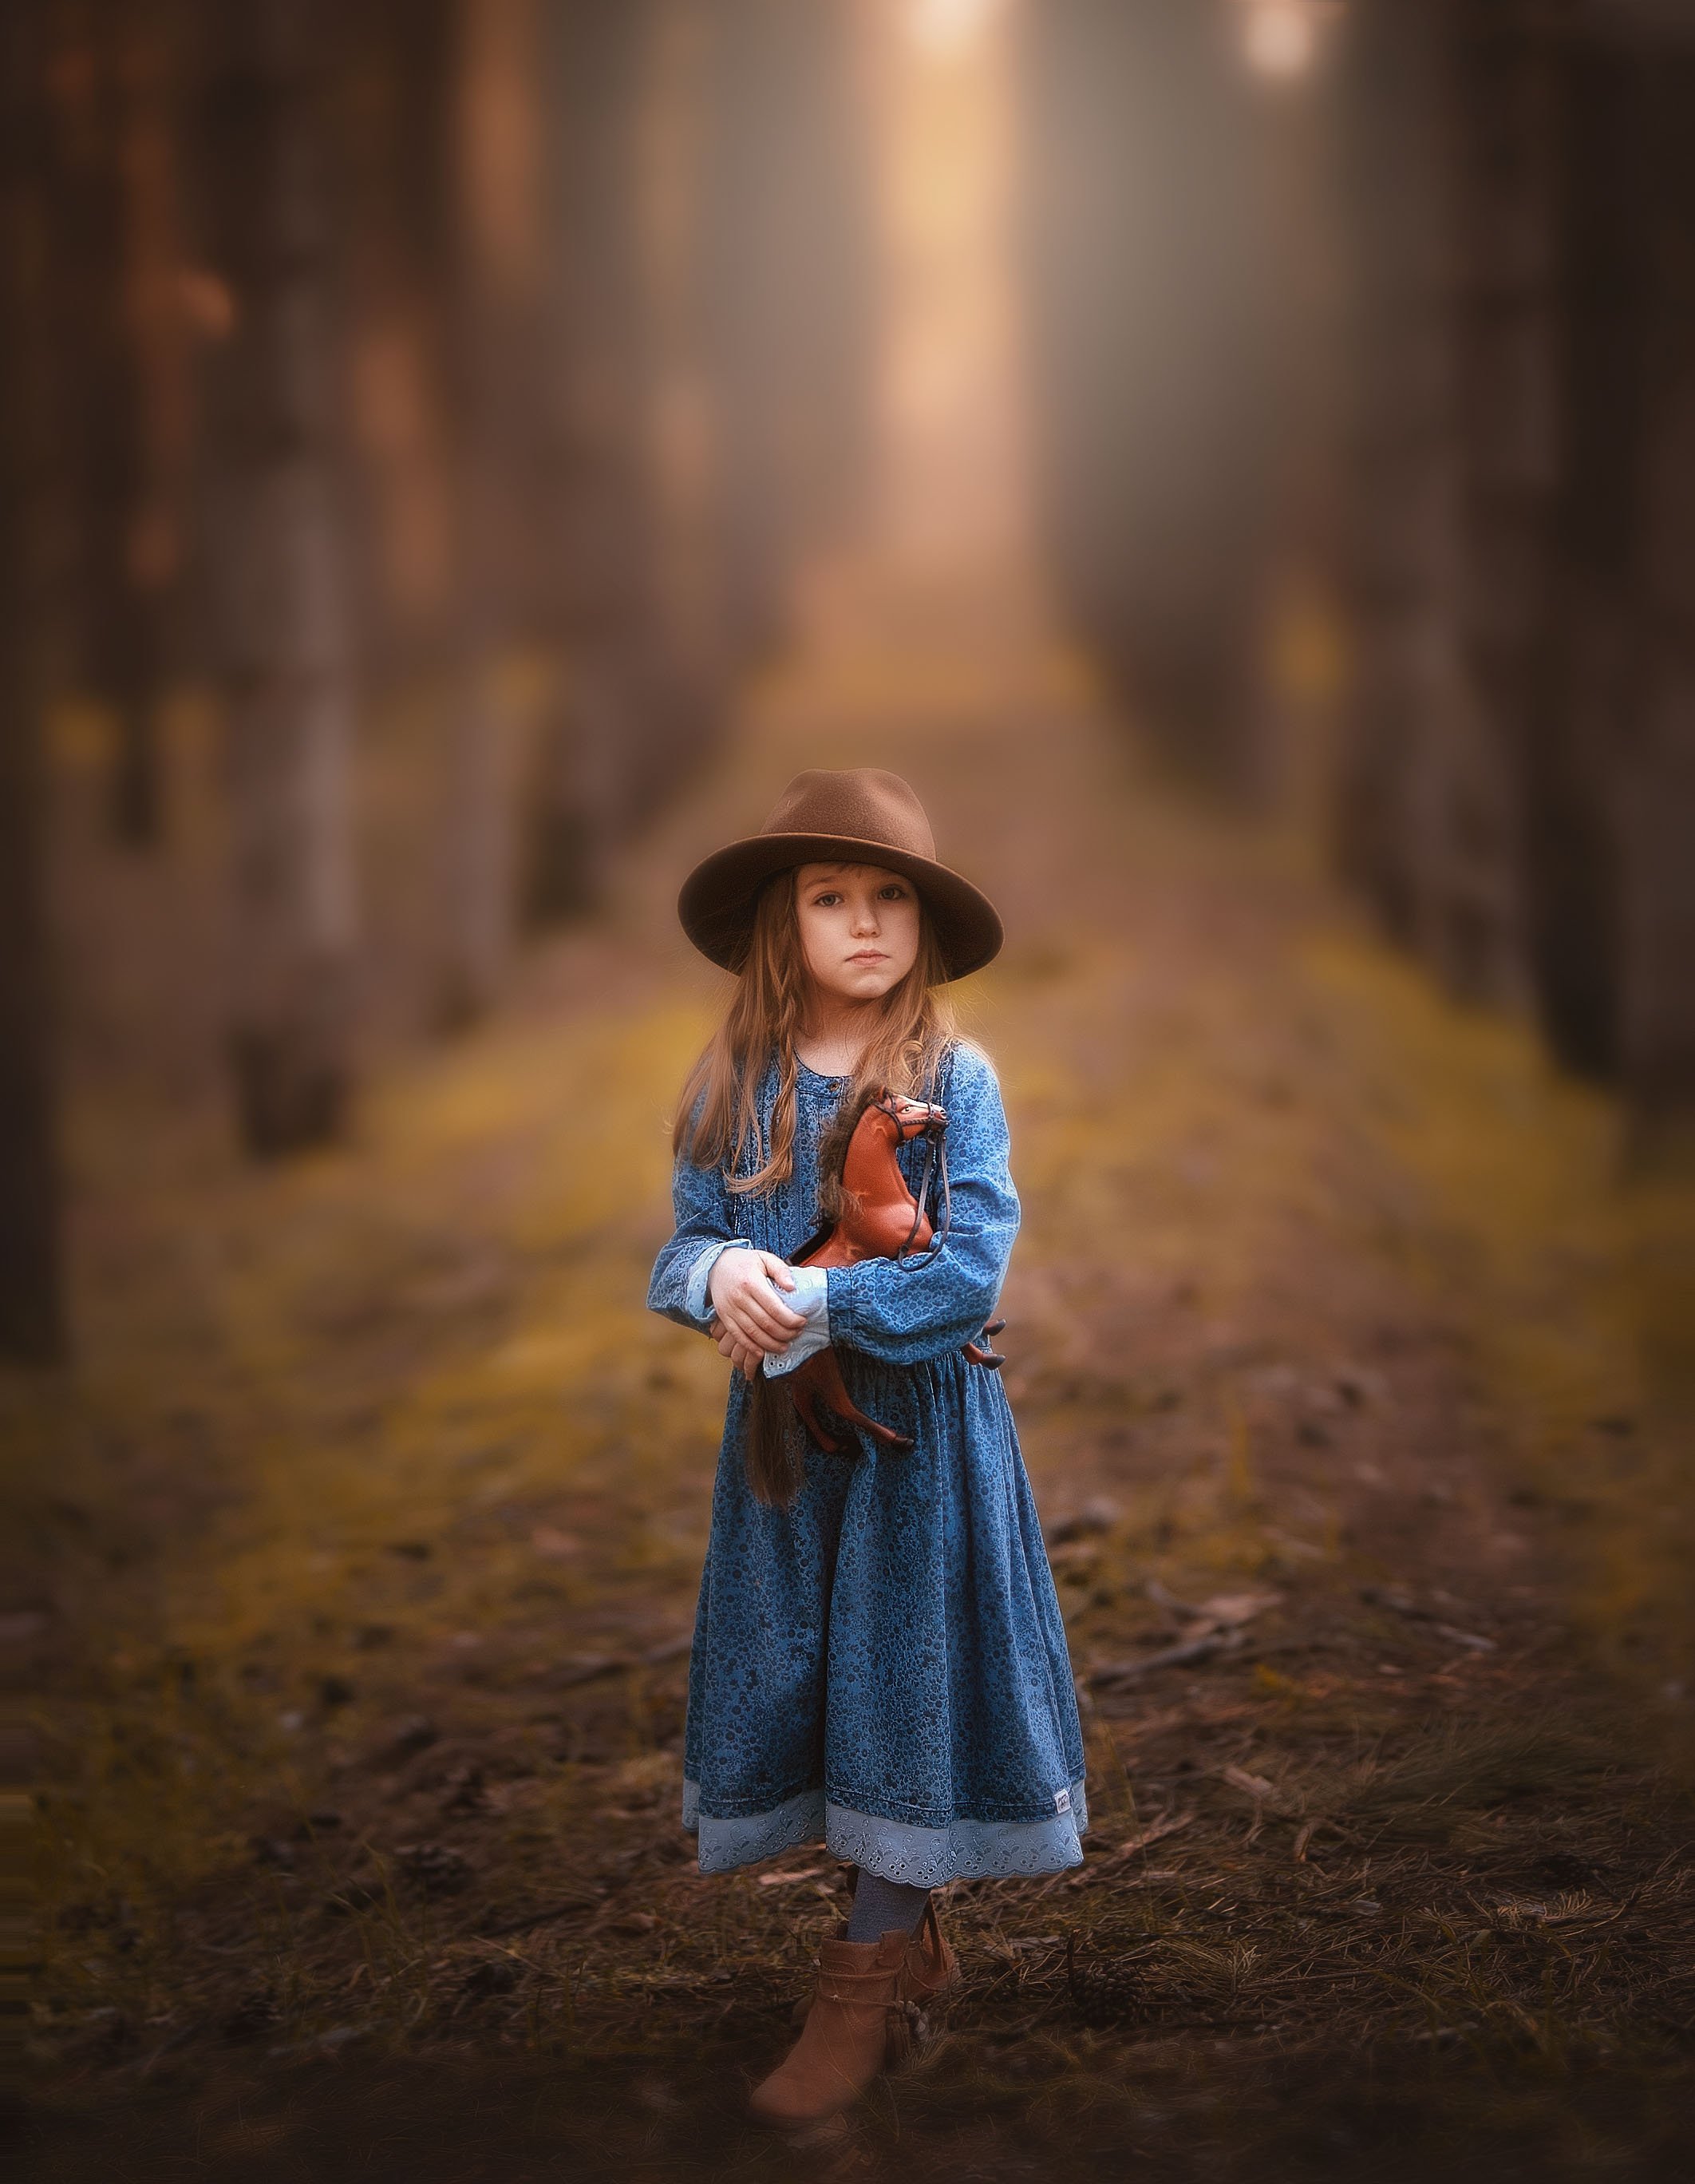 девочка детство вечер лес сосны лошадка игрушка платье шляпа аллея весна, Марина Еленчук